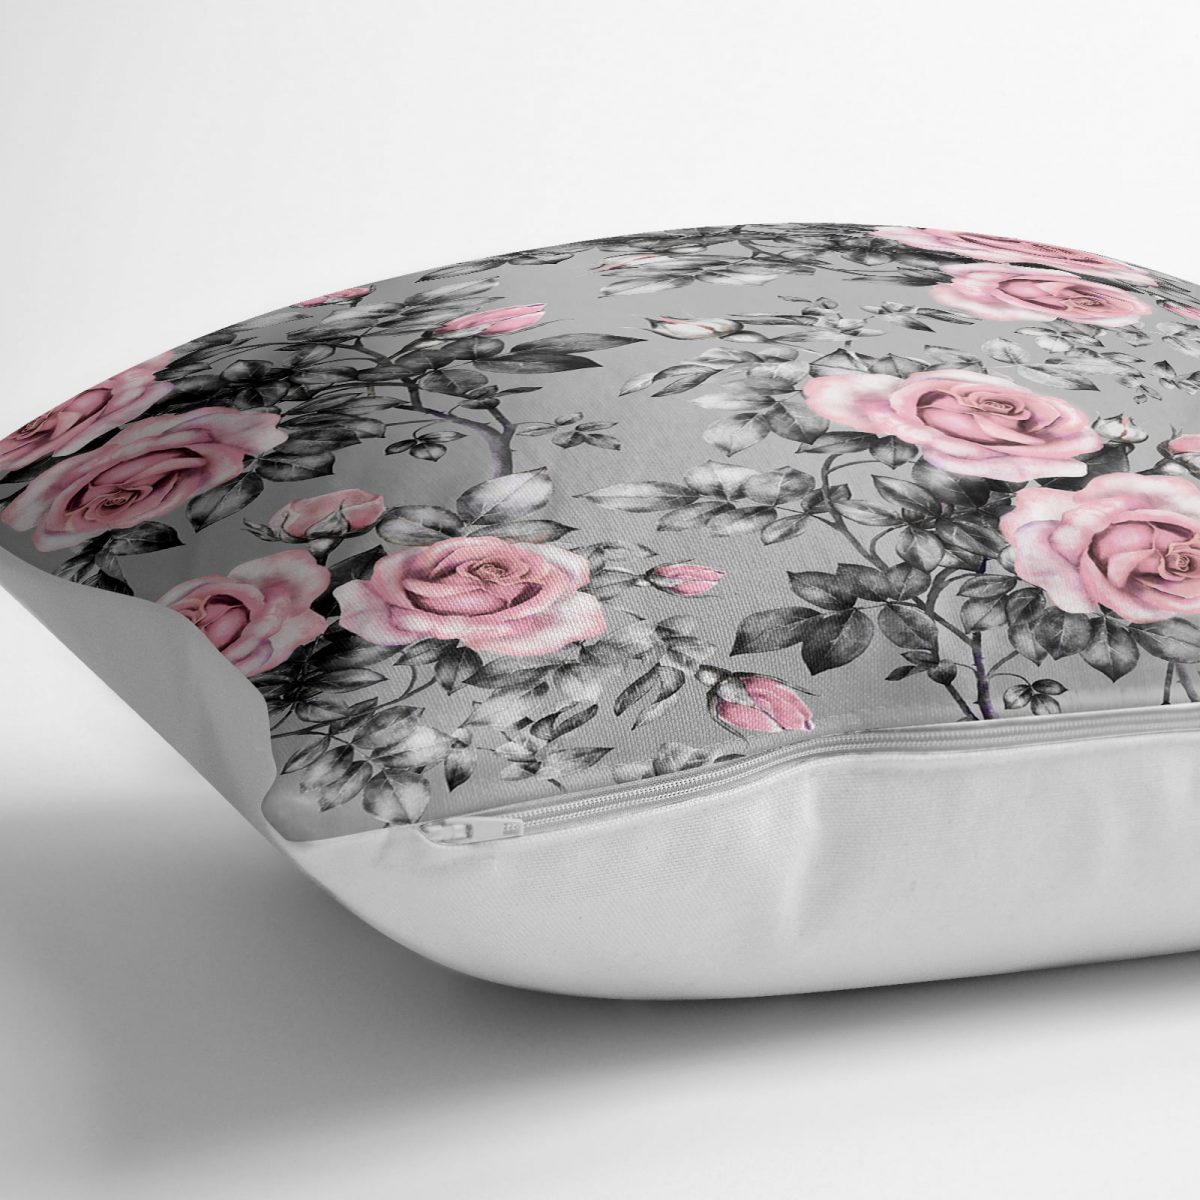 Füme Temalı Kavaniçe Çiçek Motifli Dijital Baskılı Yer Minderi - 70 x 70 cm Realhomes